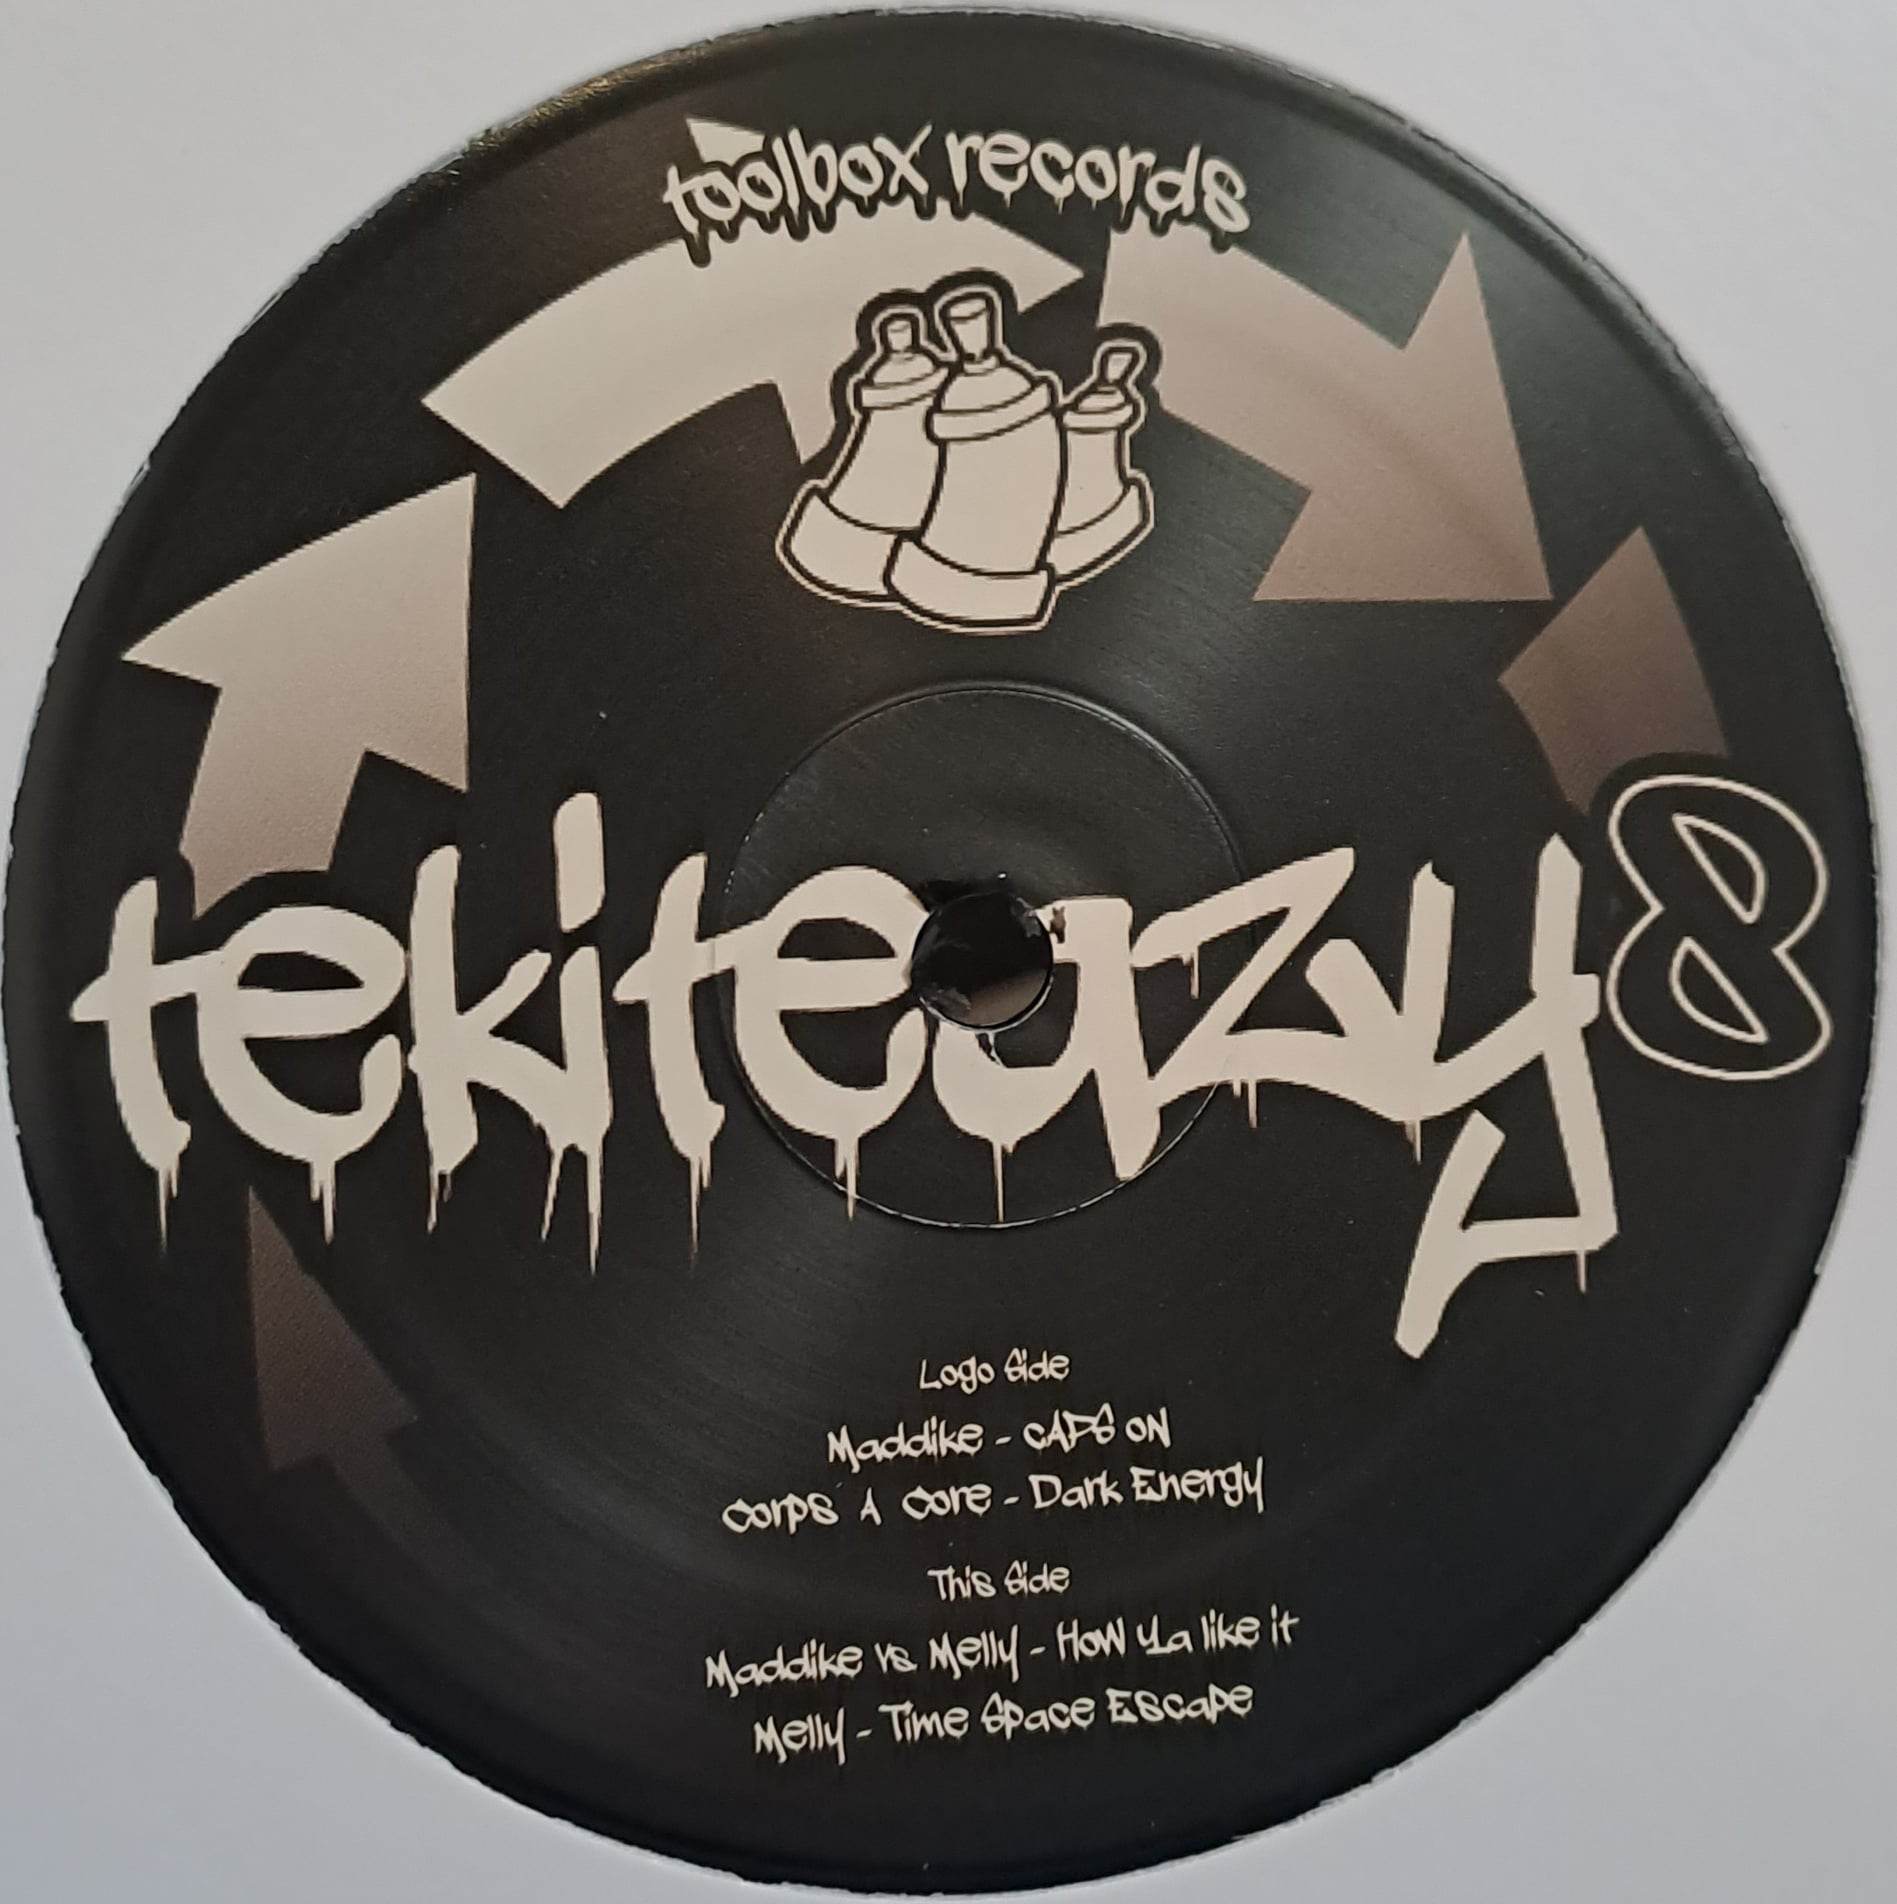 Tekiteazy 08 - vinyle freetekno